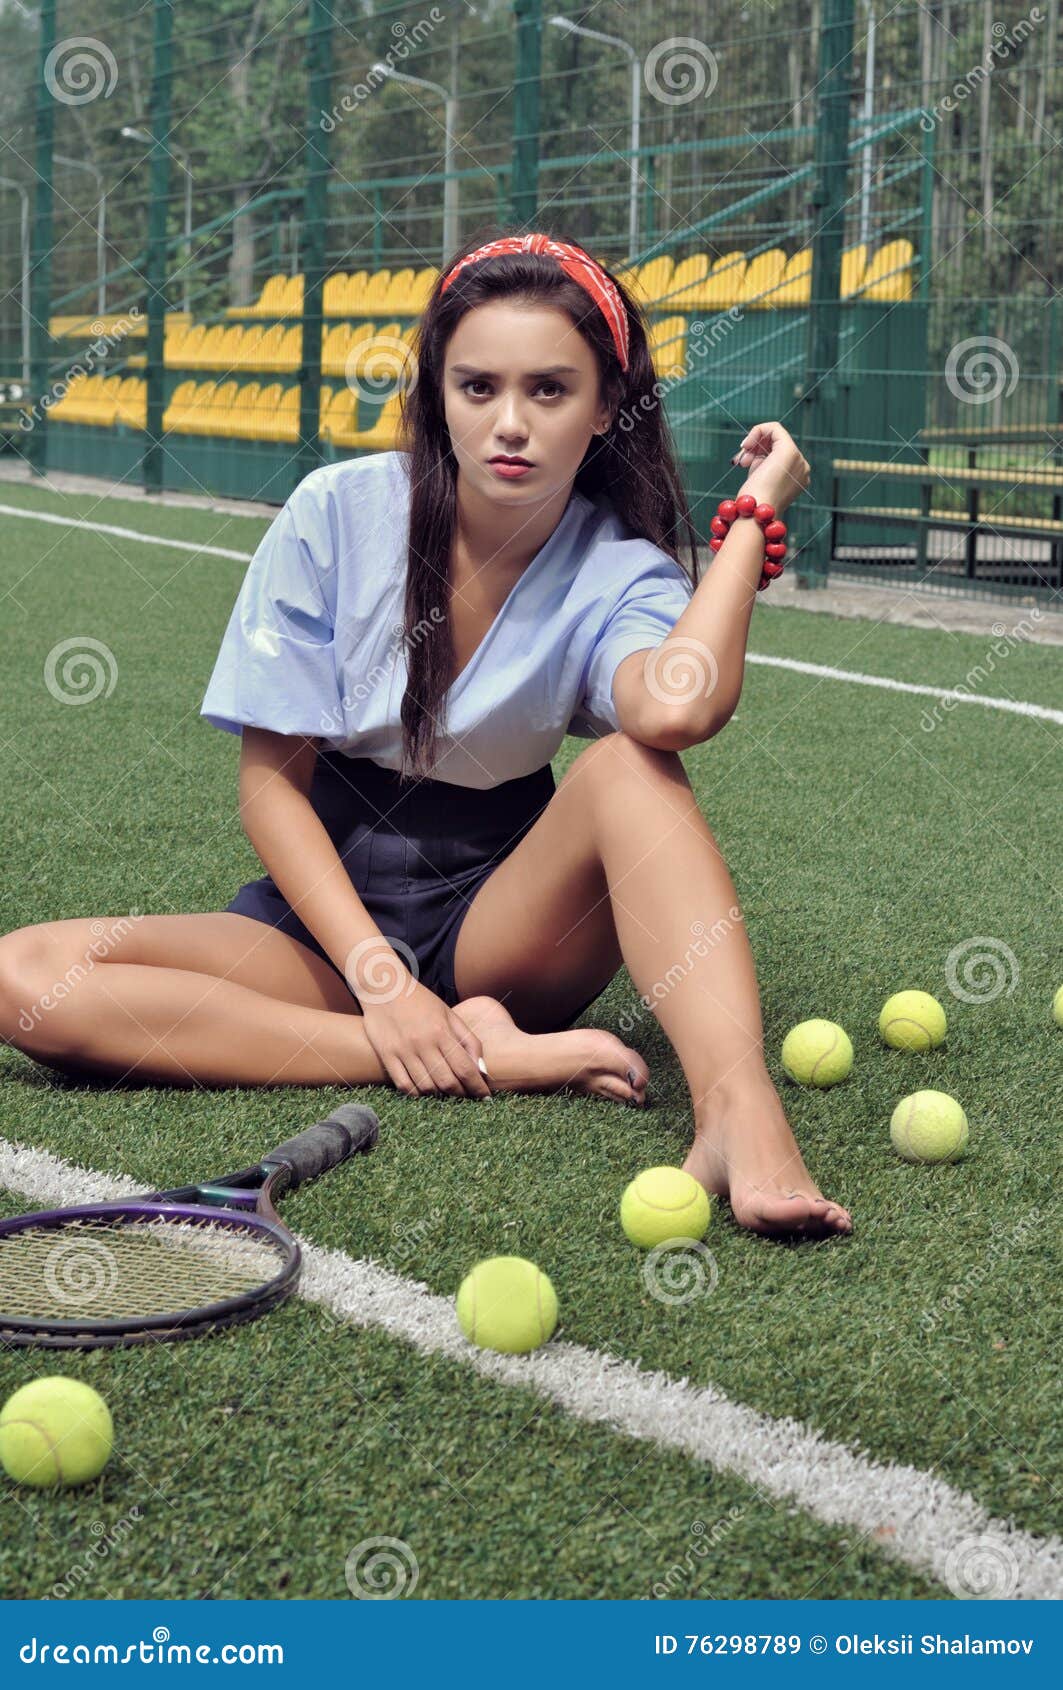 https://thumbs.dreamstime.com/z/girl-sits-cour-court-next-to-her-lies-racket-balls-wearing-blue-shirt-dark-blue-shorts-high-heeled-76298789.jpg